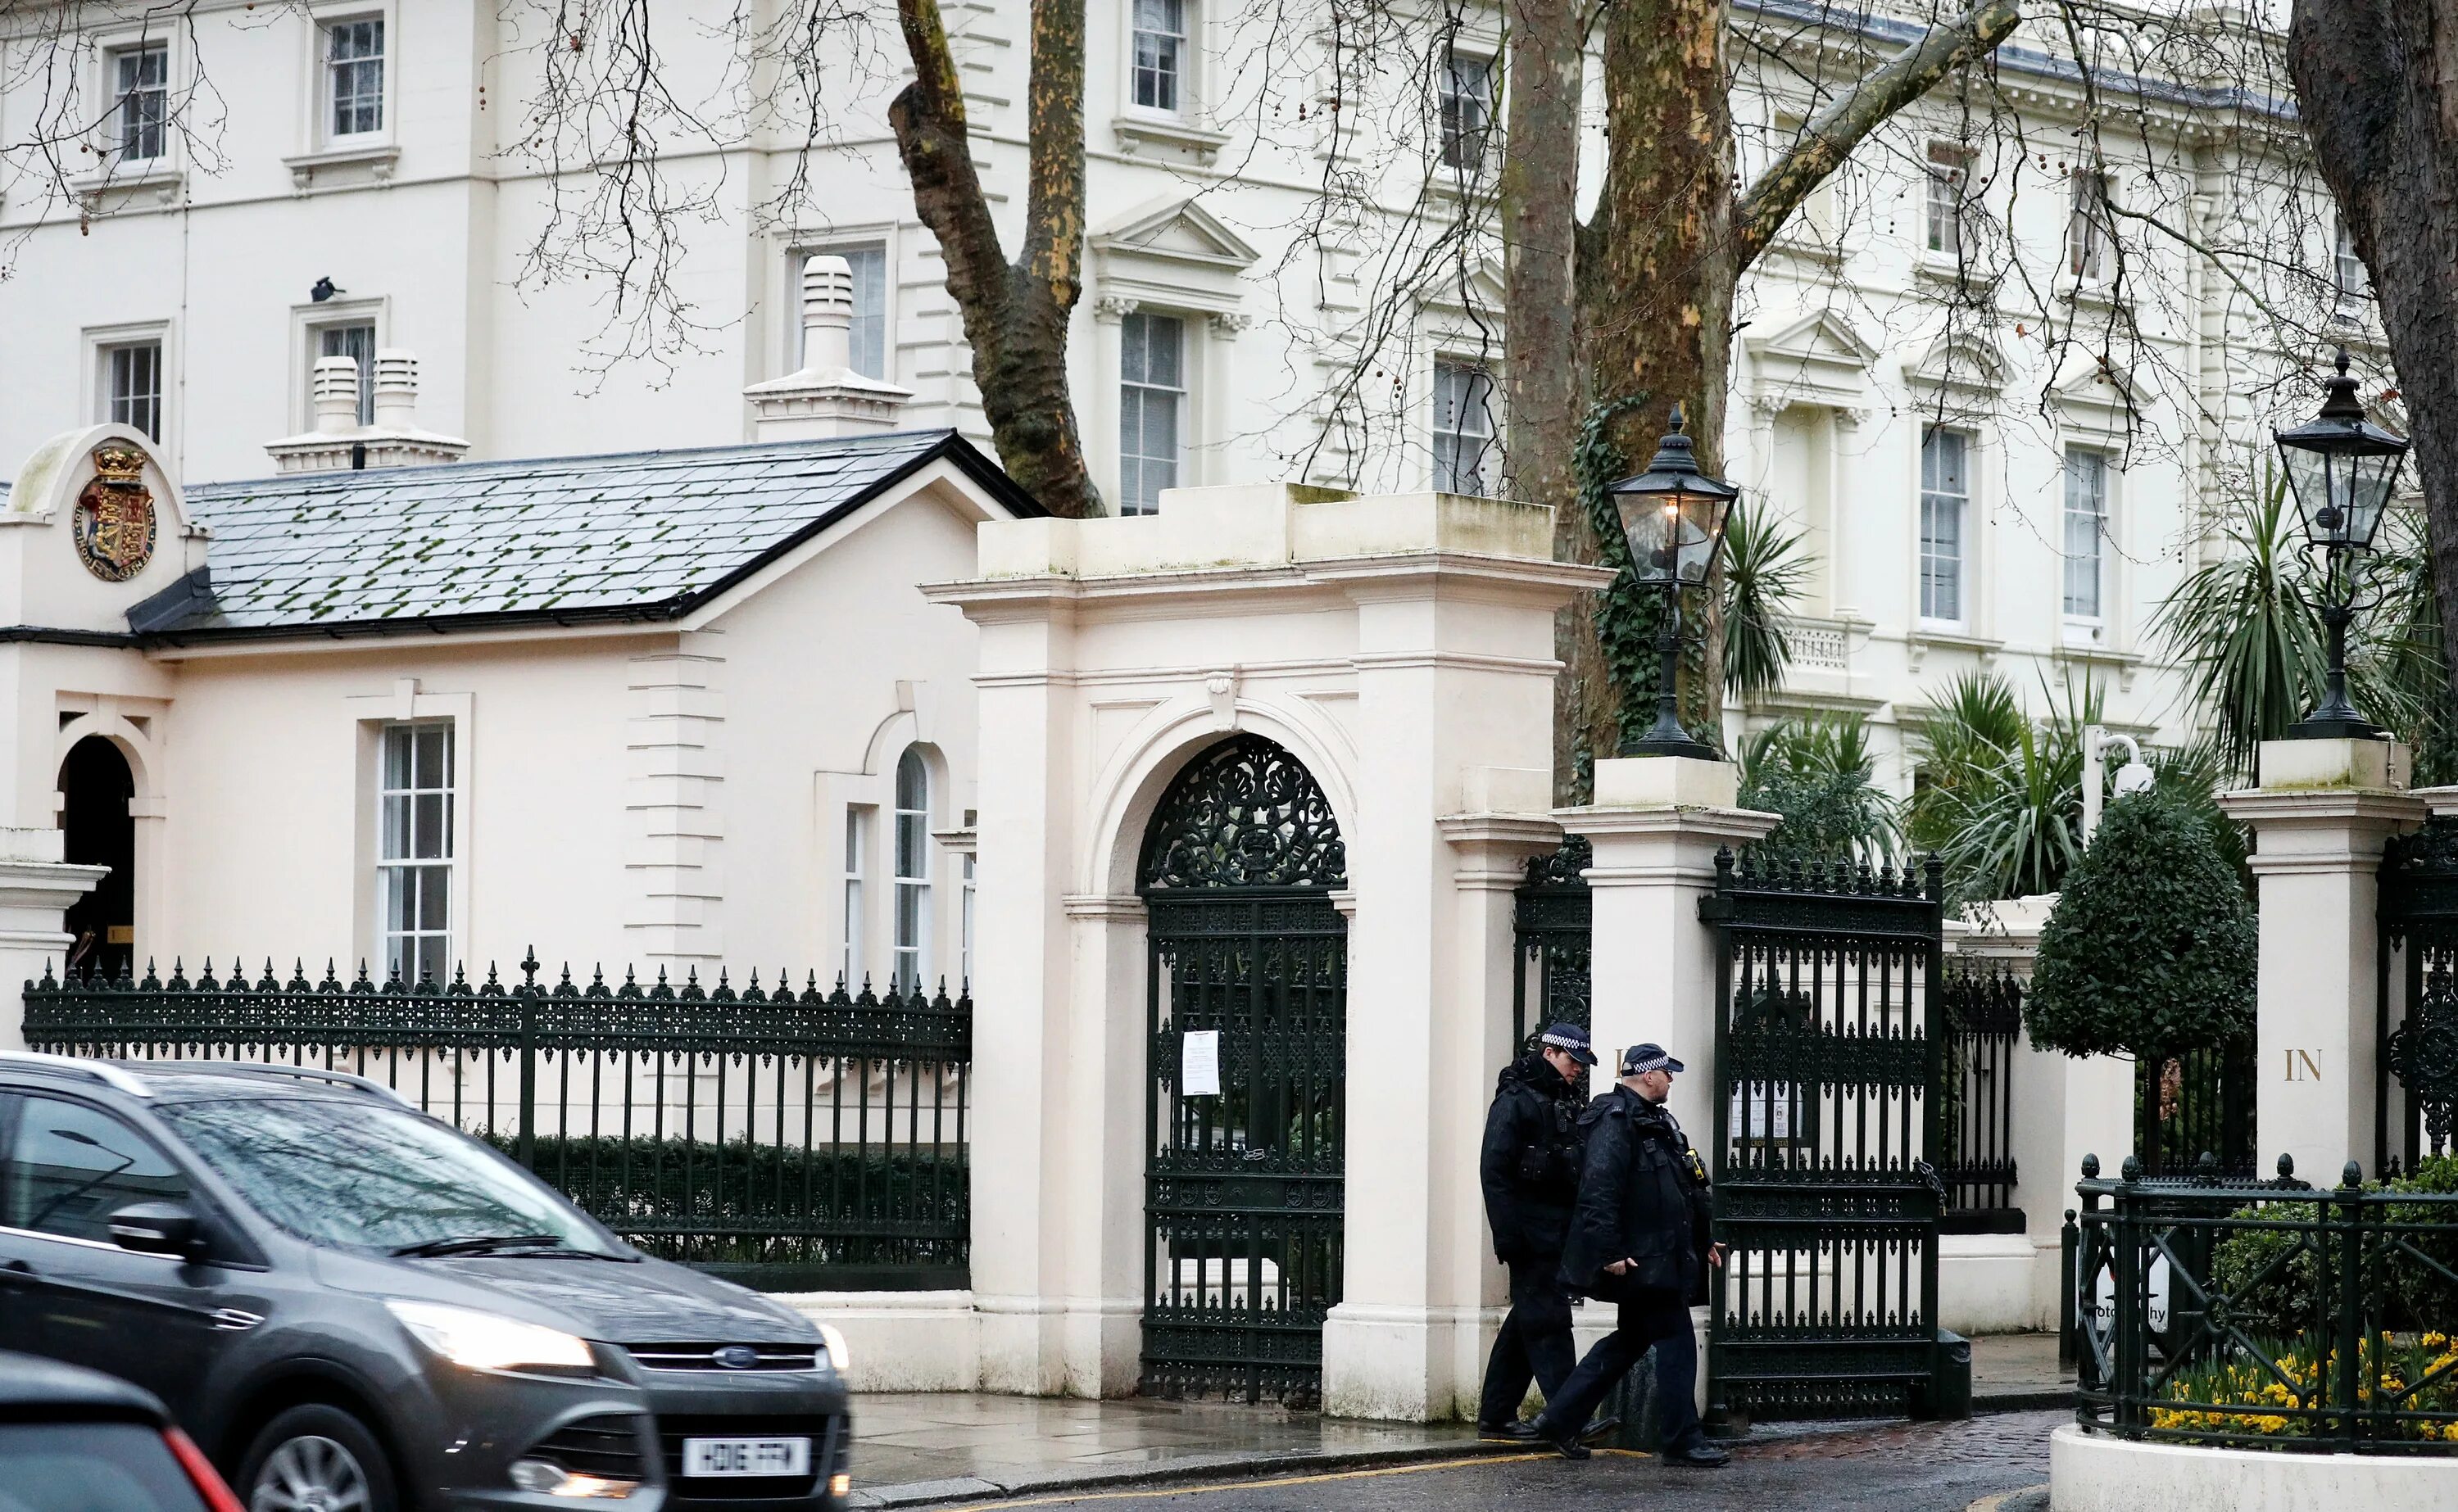 Посольство РФ В Англии. Посольство РФ В Лондоне. Кенсингтон Пэлас Гарденс в Лондоне посольства. Посольство Великобритании во Франции.